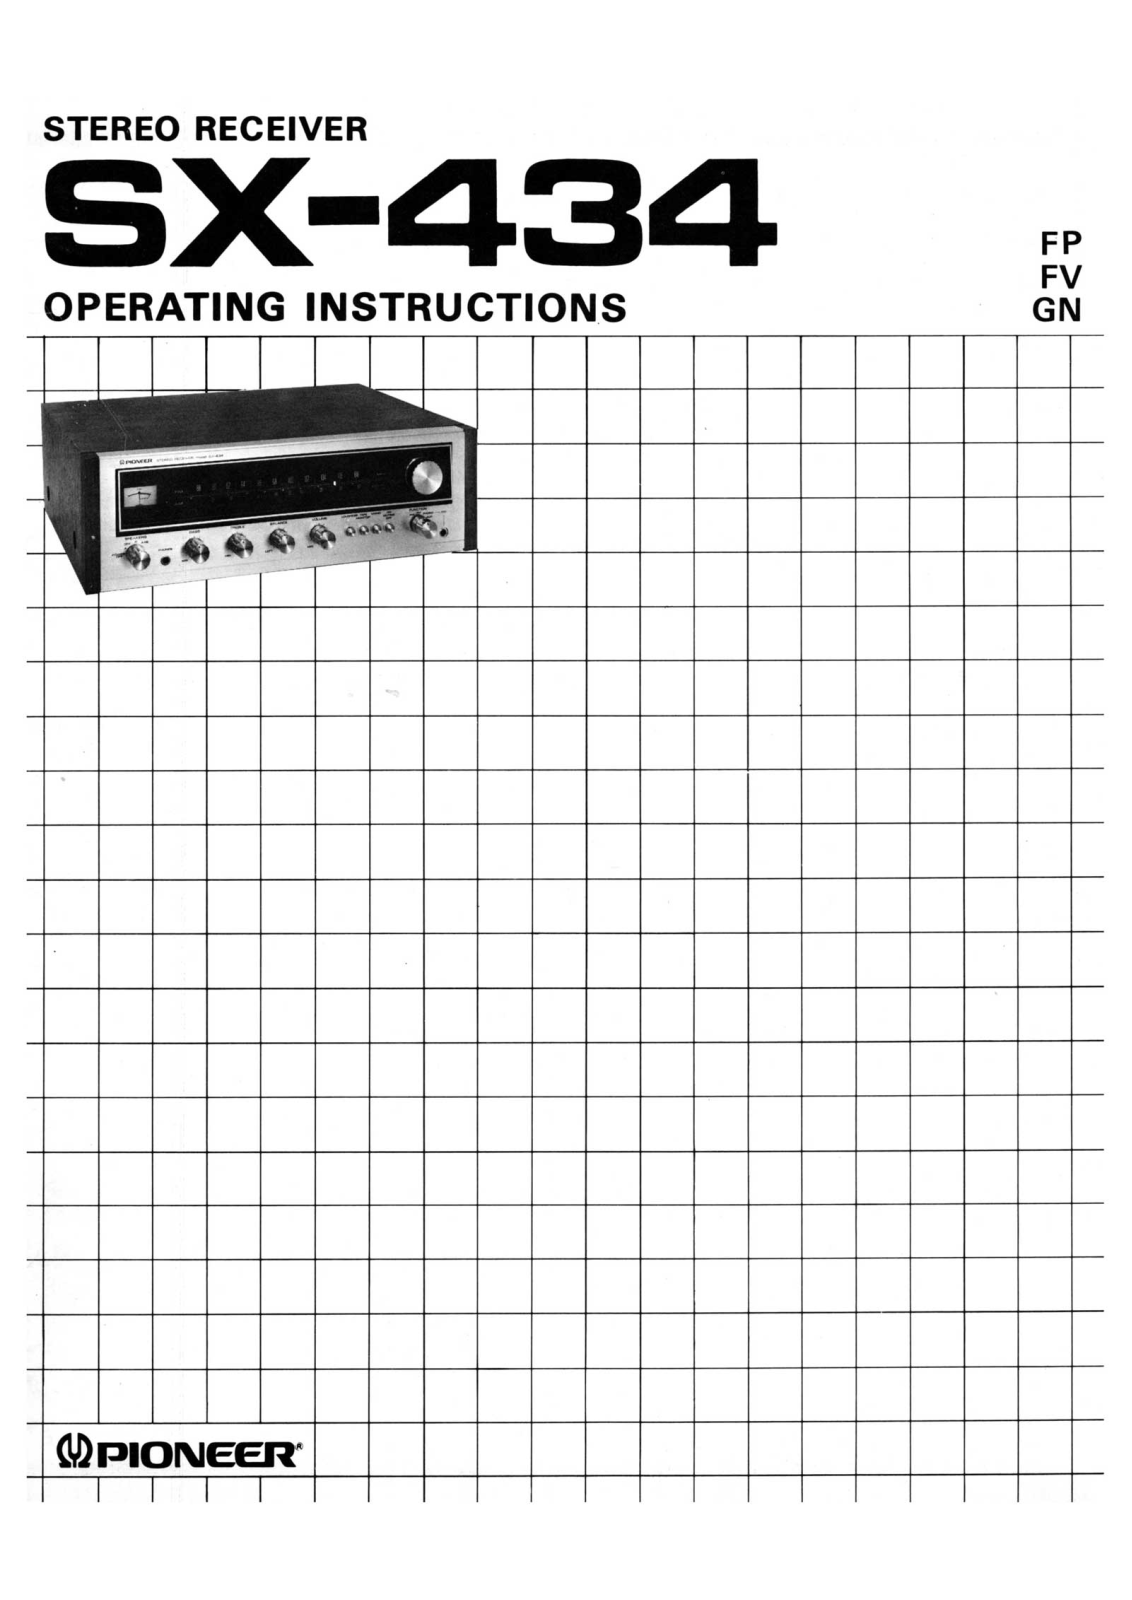 Pioneer SX-434 Owners Manual